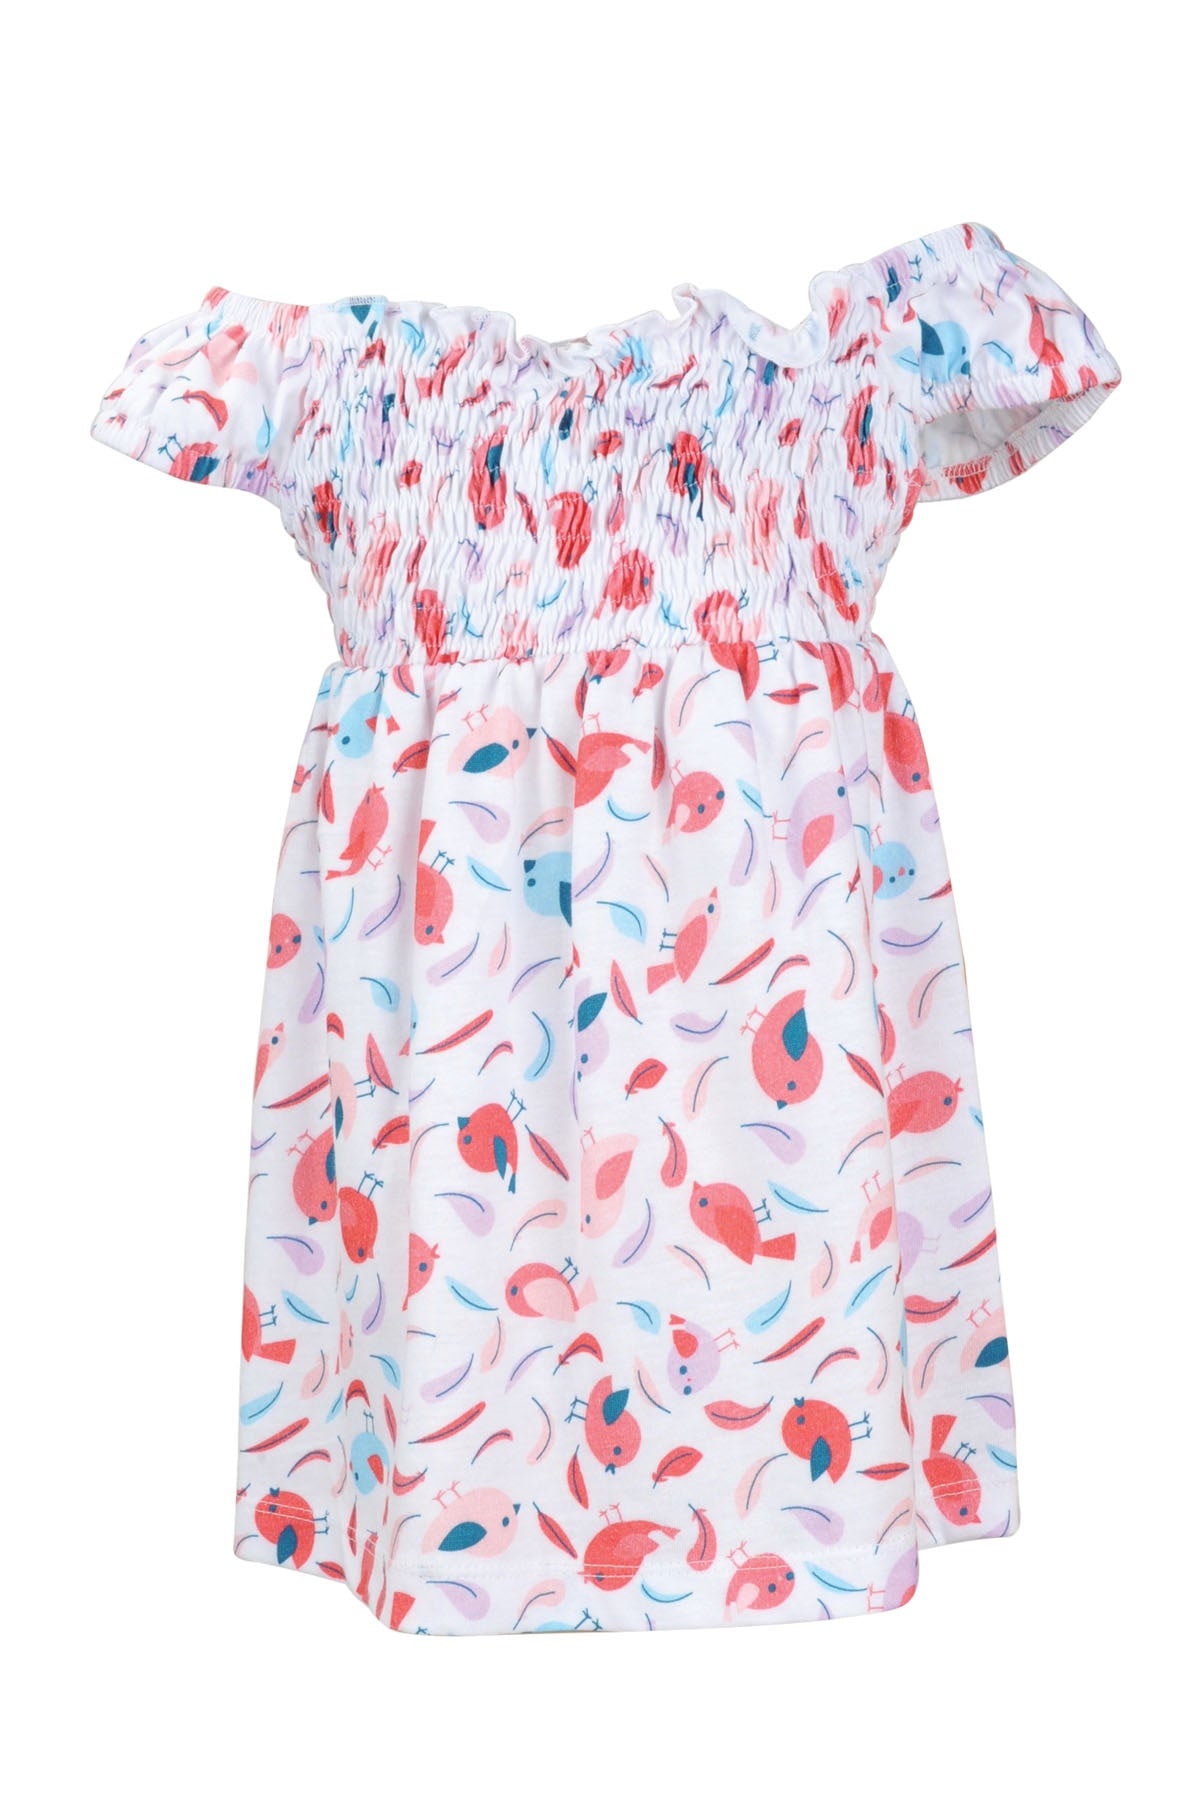 Kız Bebek Kuş Desenli Bird Elbise (9ay-4yaş)-2